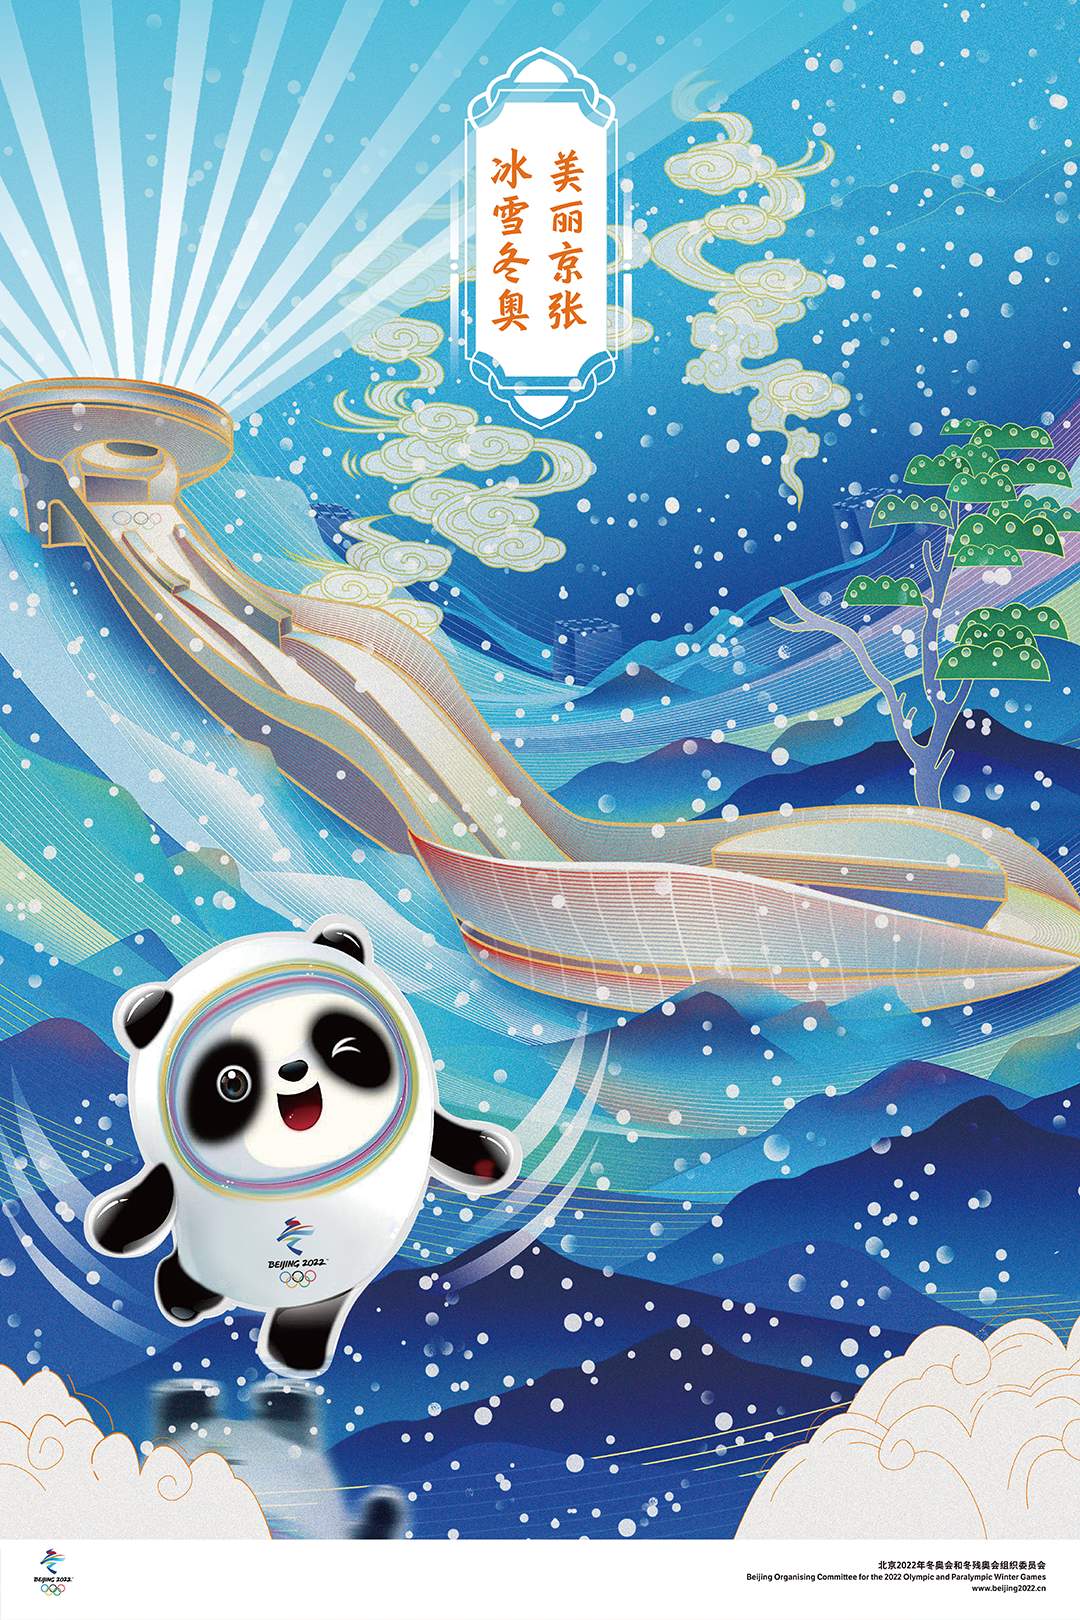 作品名：《冰雪冬奧 美麗北京》作者：趙璐、奉濤、王雪凌 (來自:北京冬奧組委官網)